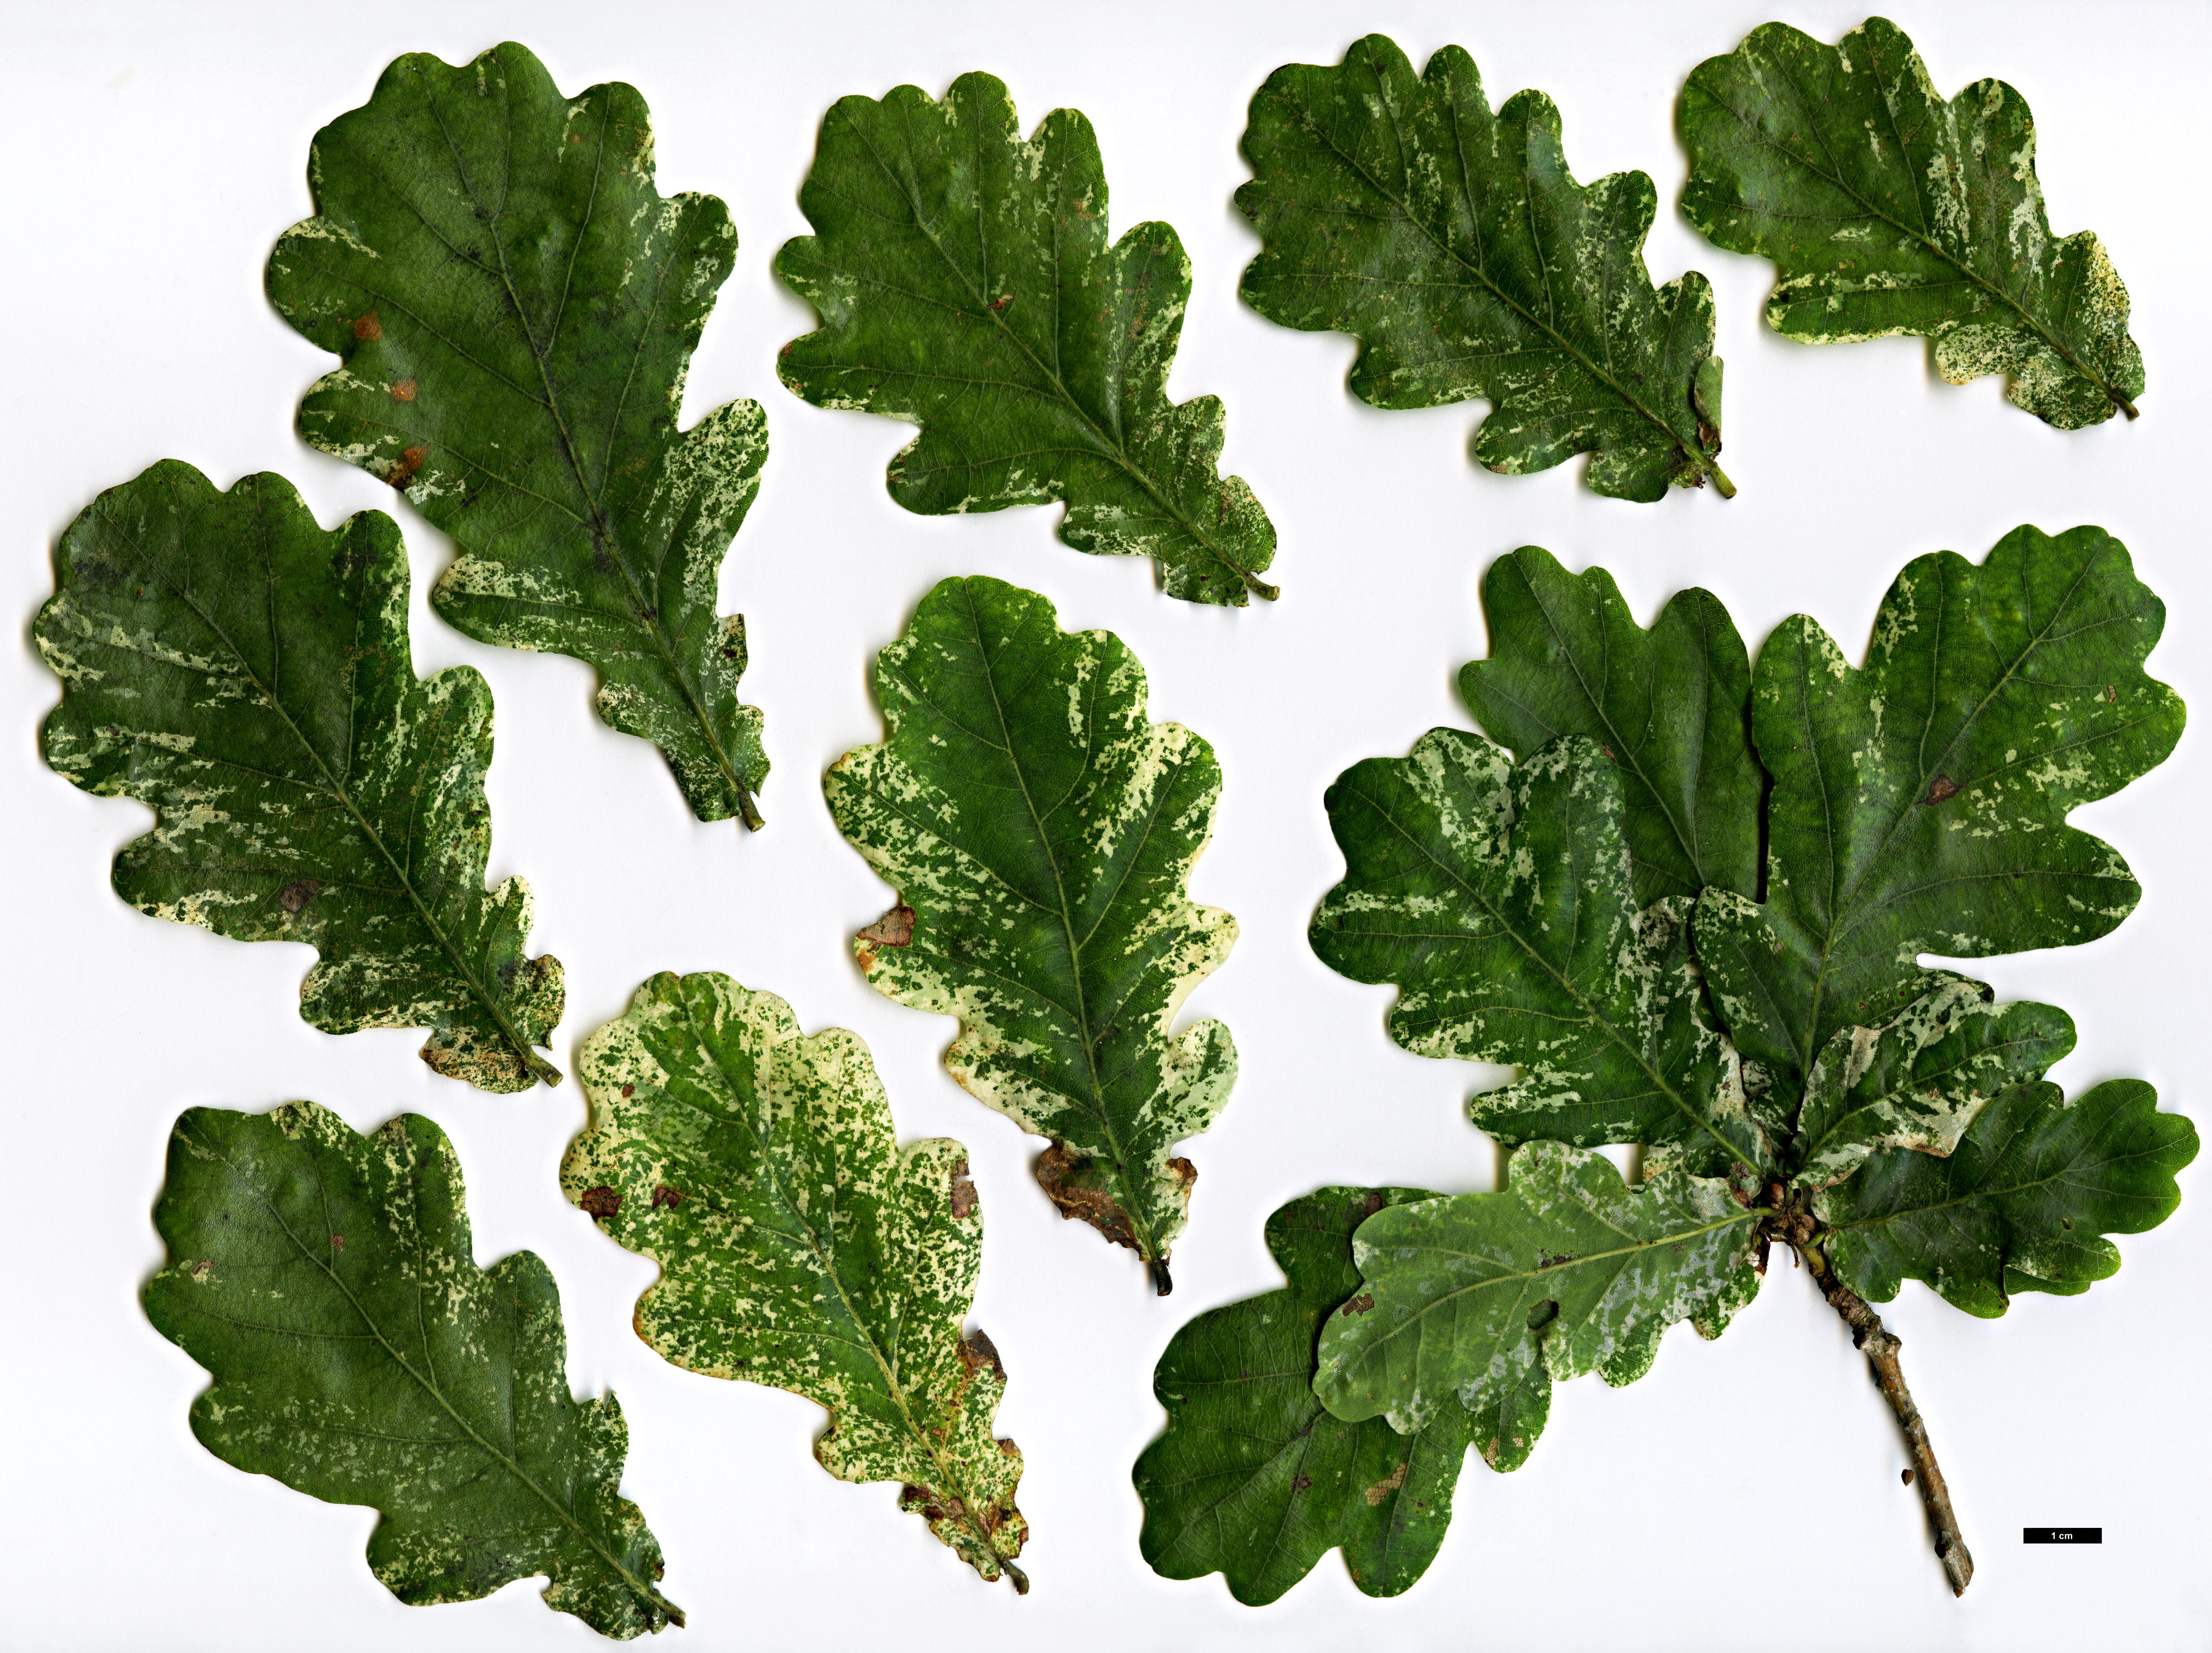 High resolution image: Family: Fagaceae - Genus: Quercus - Taxon: robur - SpeciesSub: 'Latimaculata'